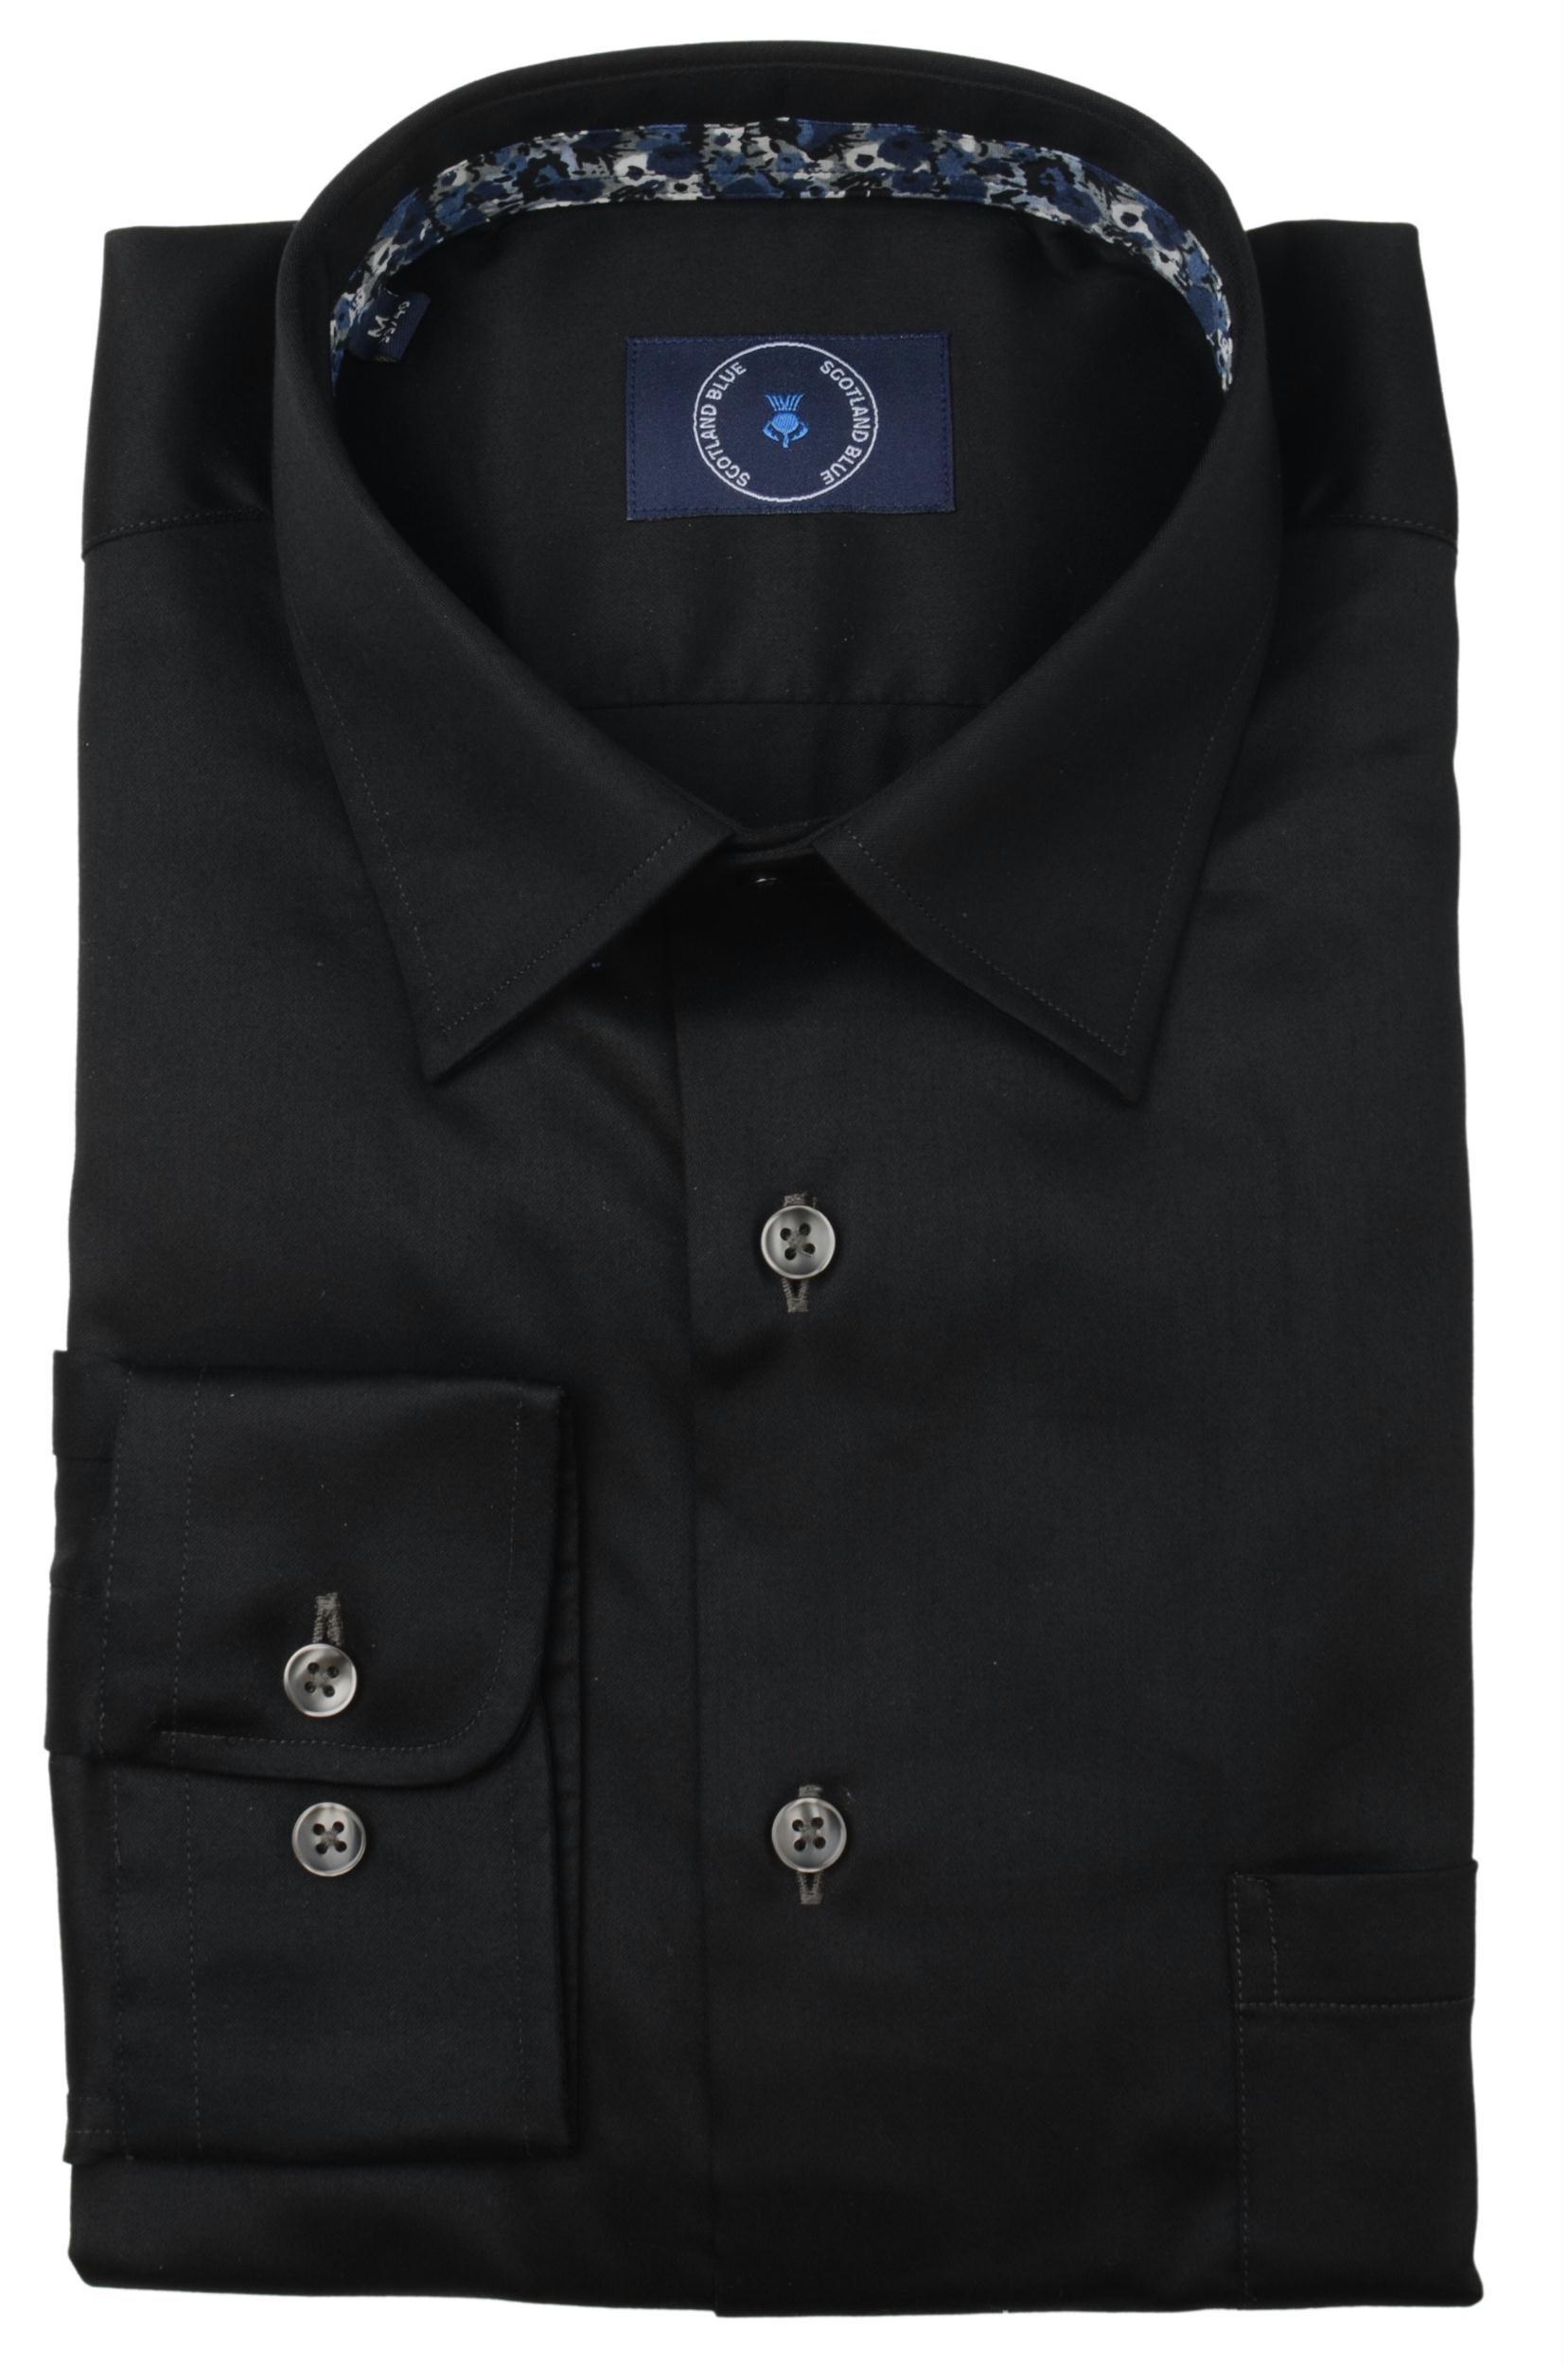 Scotland Blue Casual hemd lange mouw Zwart Dean 2-tone Twill Shirt Sprea 21307DE35SB/980 antra